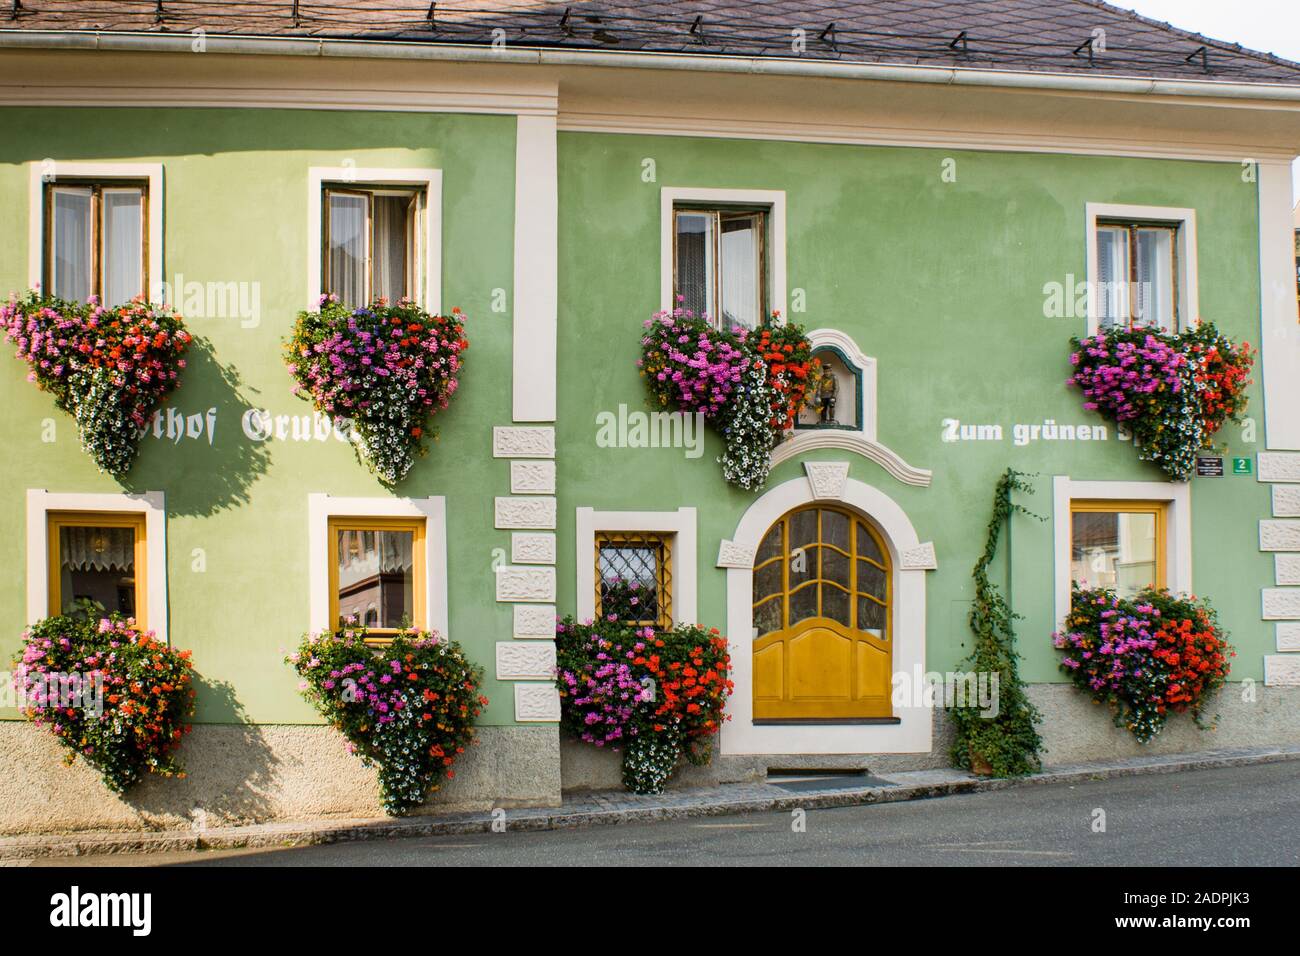 Gasthof zum grünen Specht, Blumenschmuck in Oberzeiring, Steiermark Österreich Stock Photo